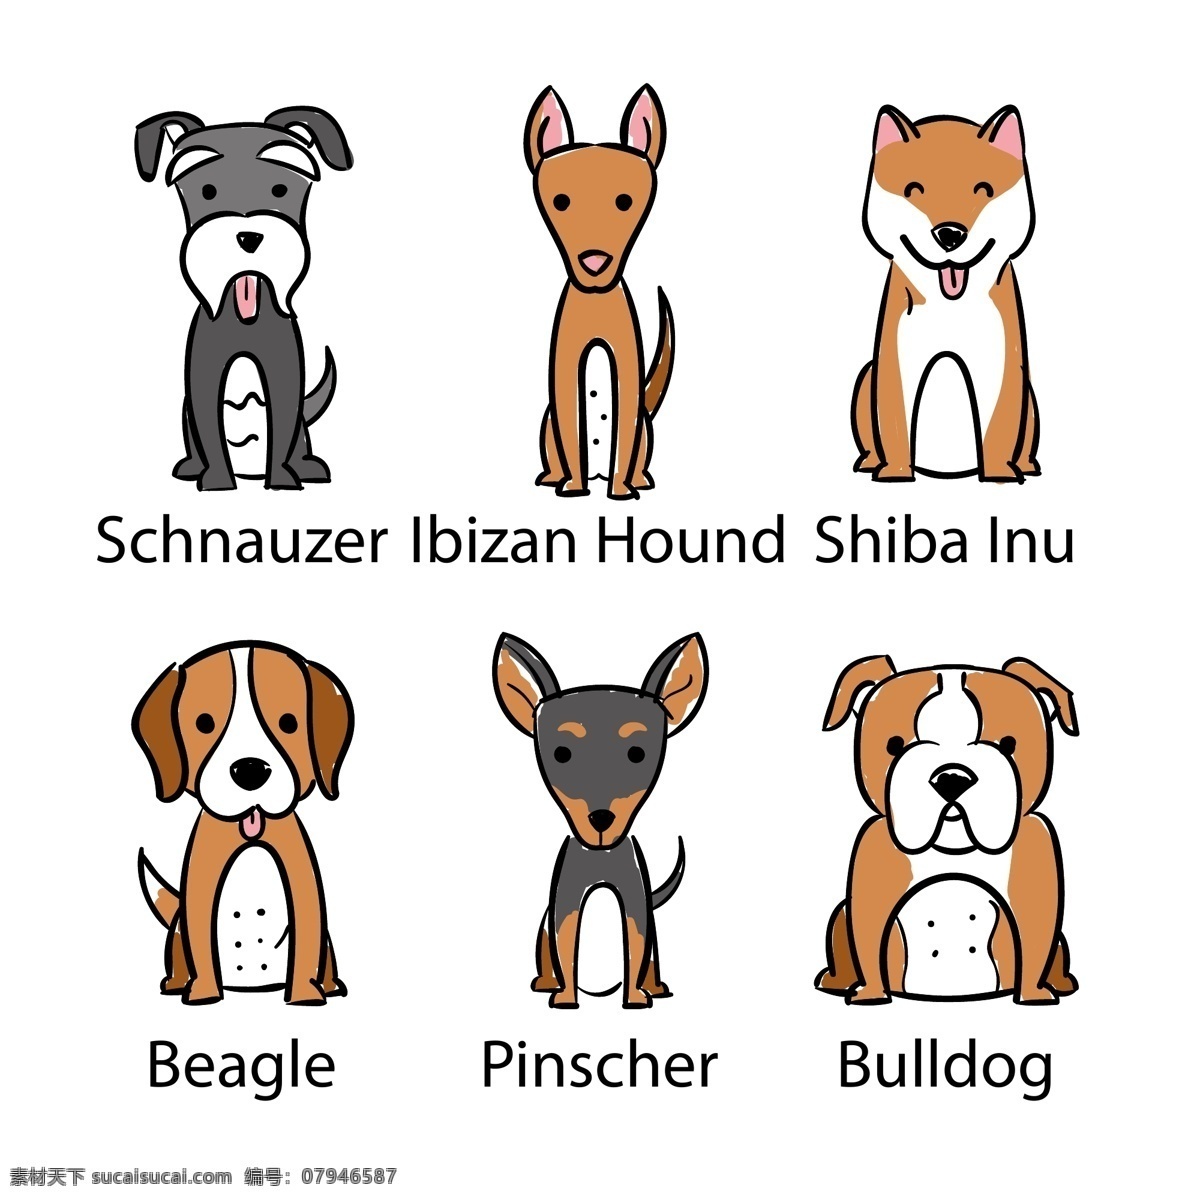 插画 动物 搞笑 狗 卡通 卡通动物 卡通狗 可爱 可爱宠物 脸 犬 手绘 六 种 不同 品种